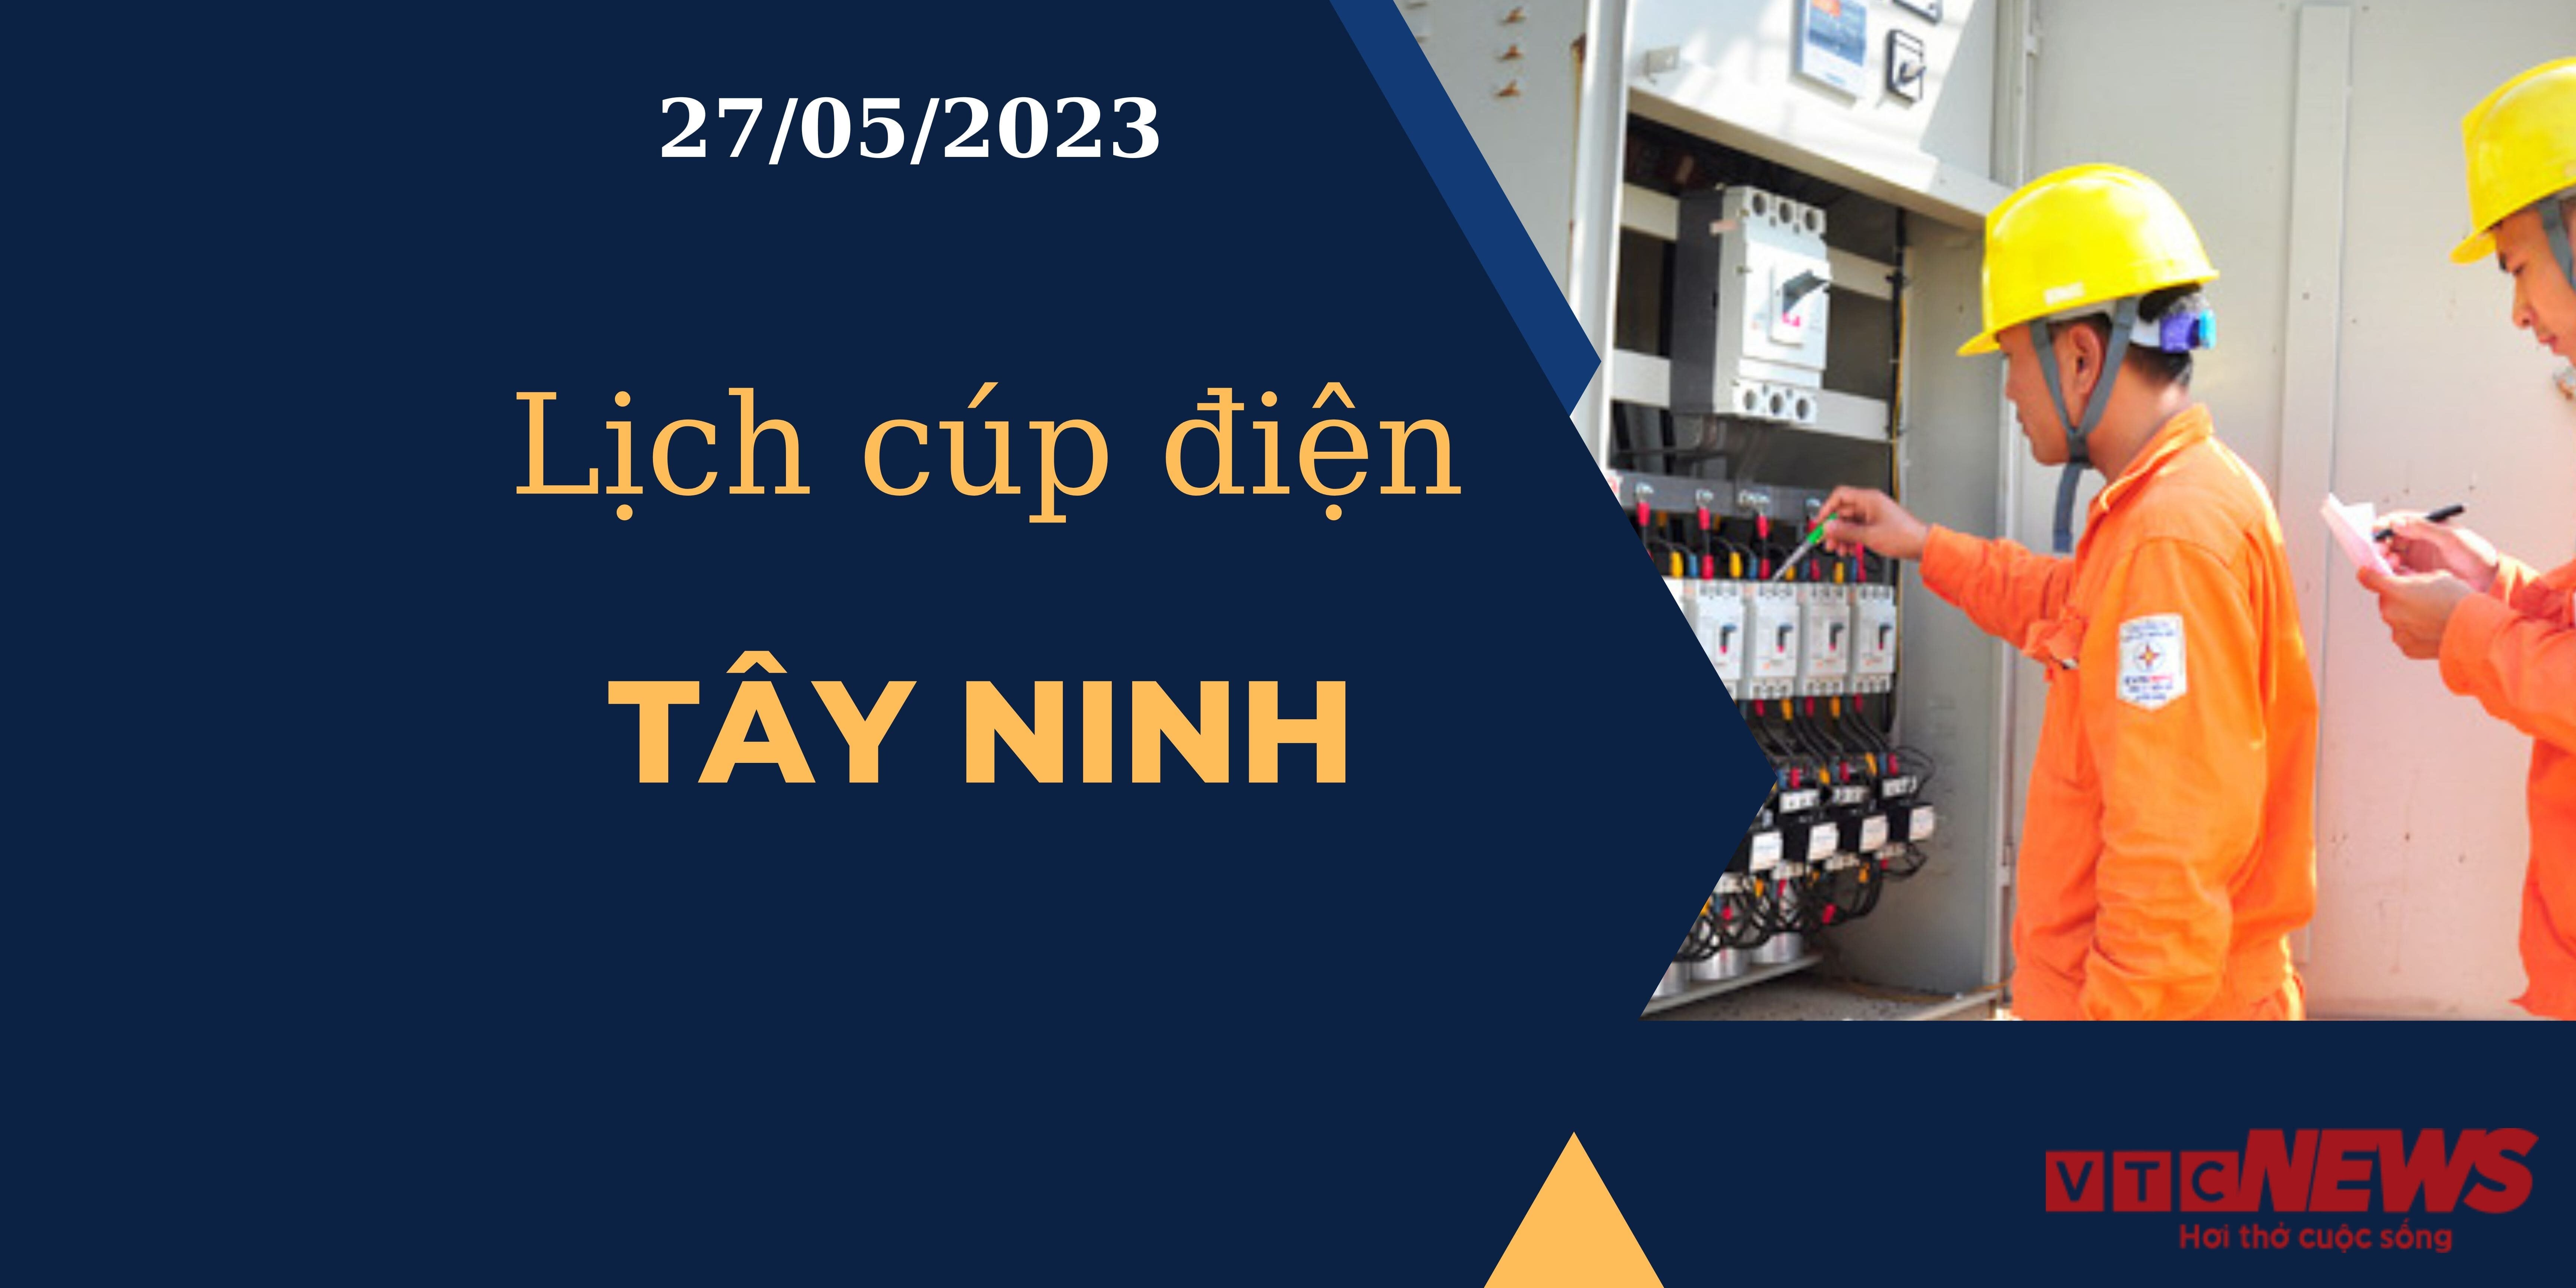 Lịch cúp điện hôm nay ngày 27/05/2023 tại Tây Ninh - 1